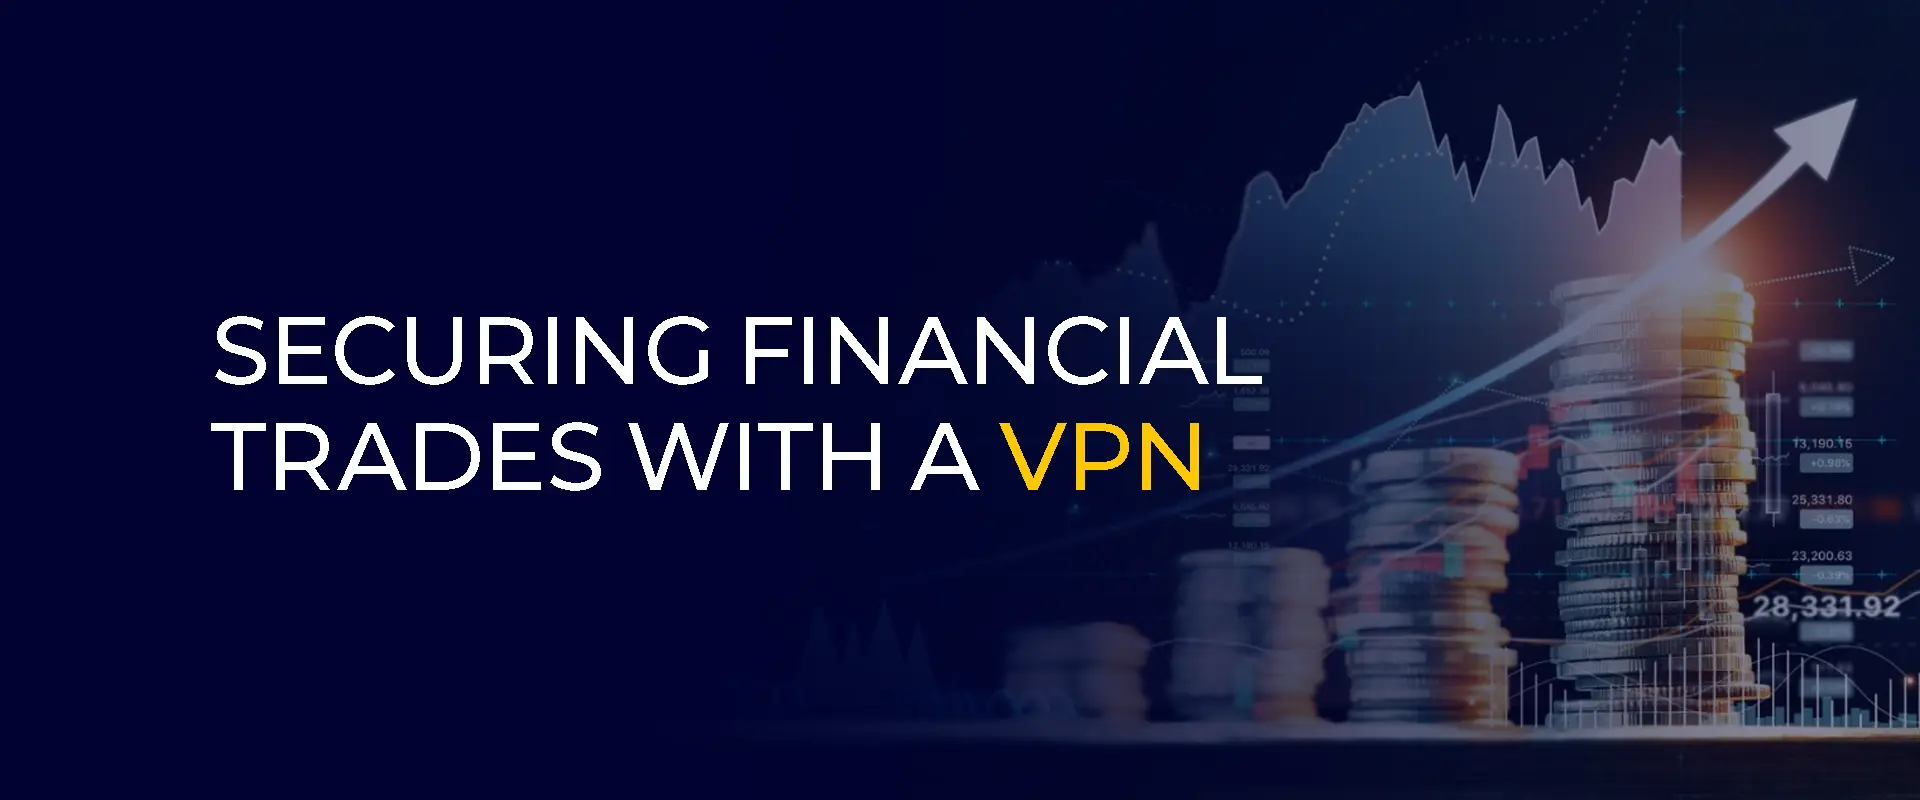 Protegendo negociações financeiras com uma VPN